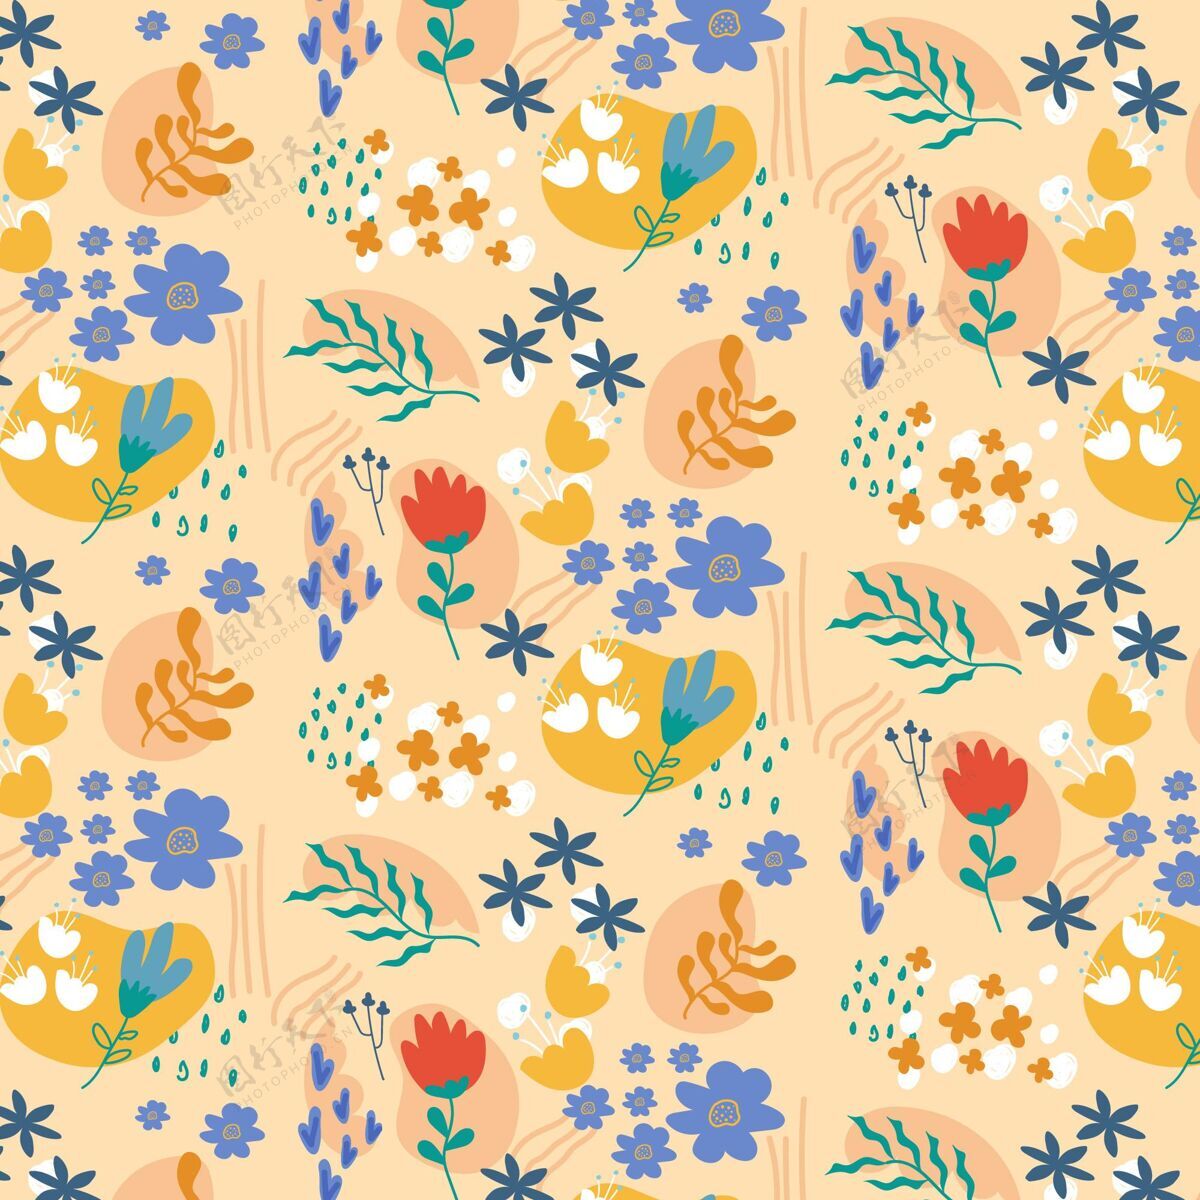 平面设计有机平面抽象花卉图案装饰花卉植物